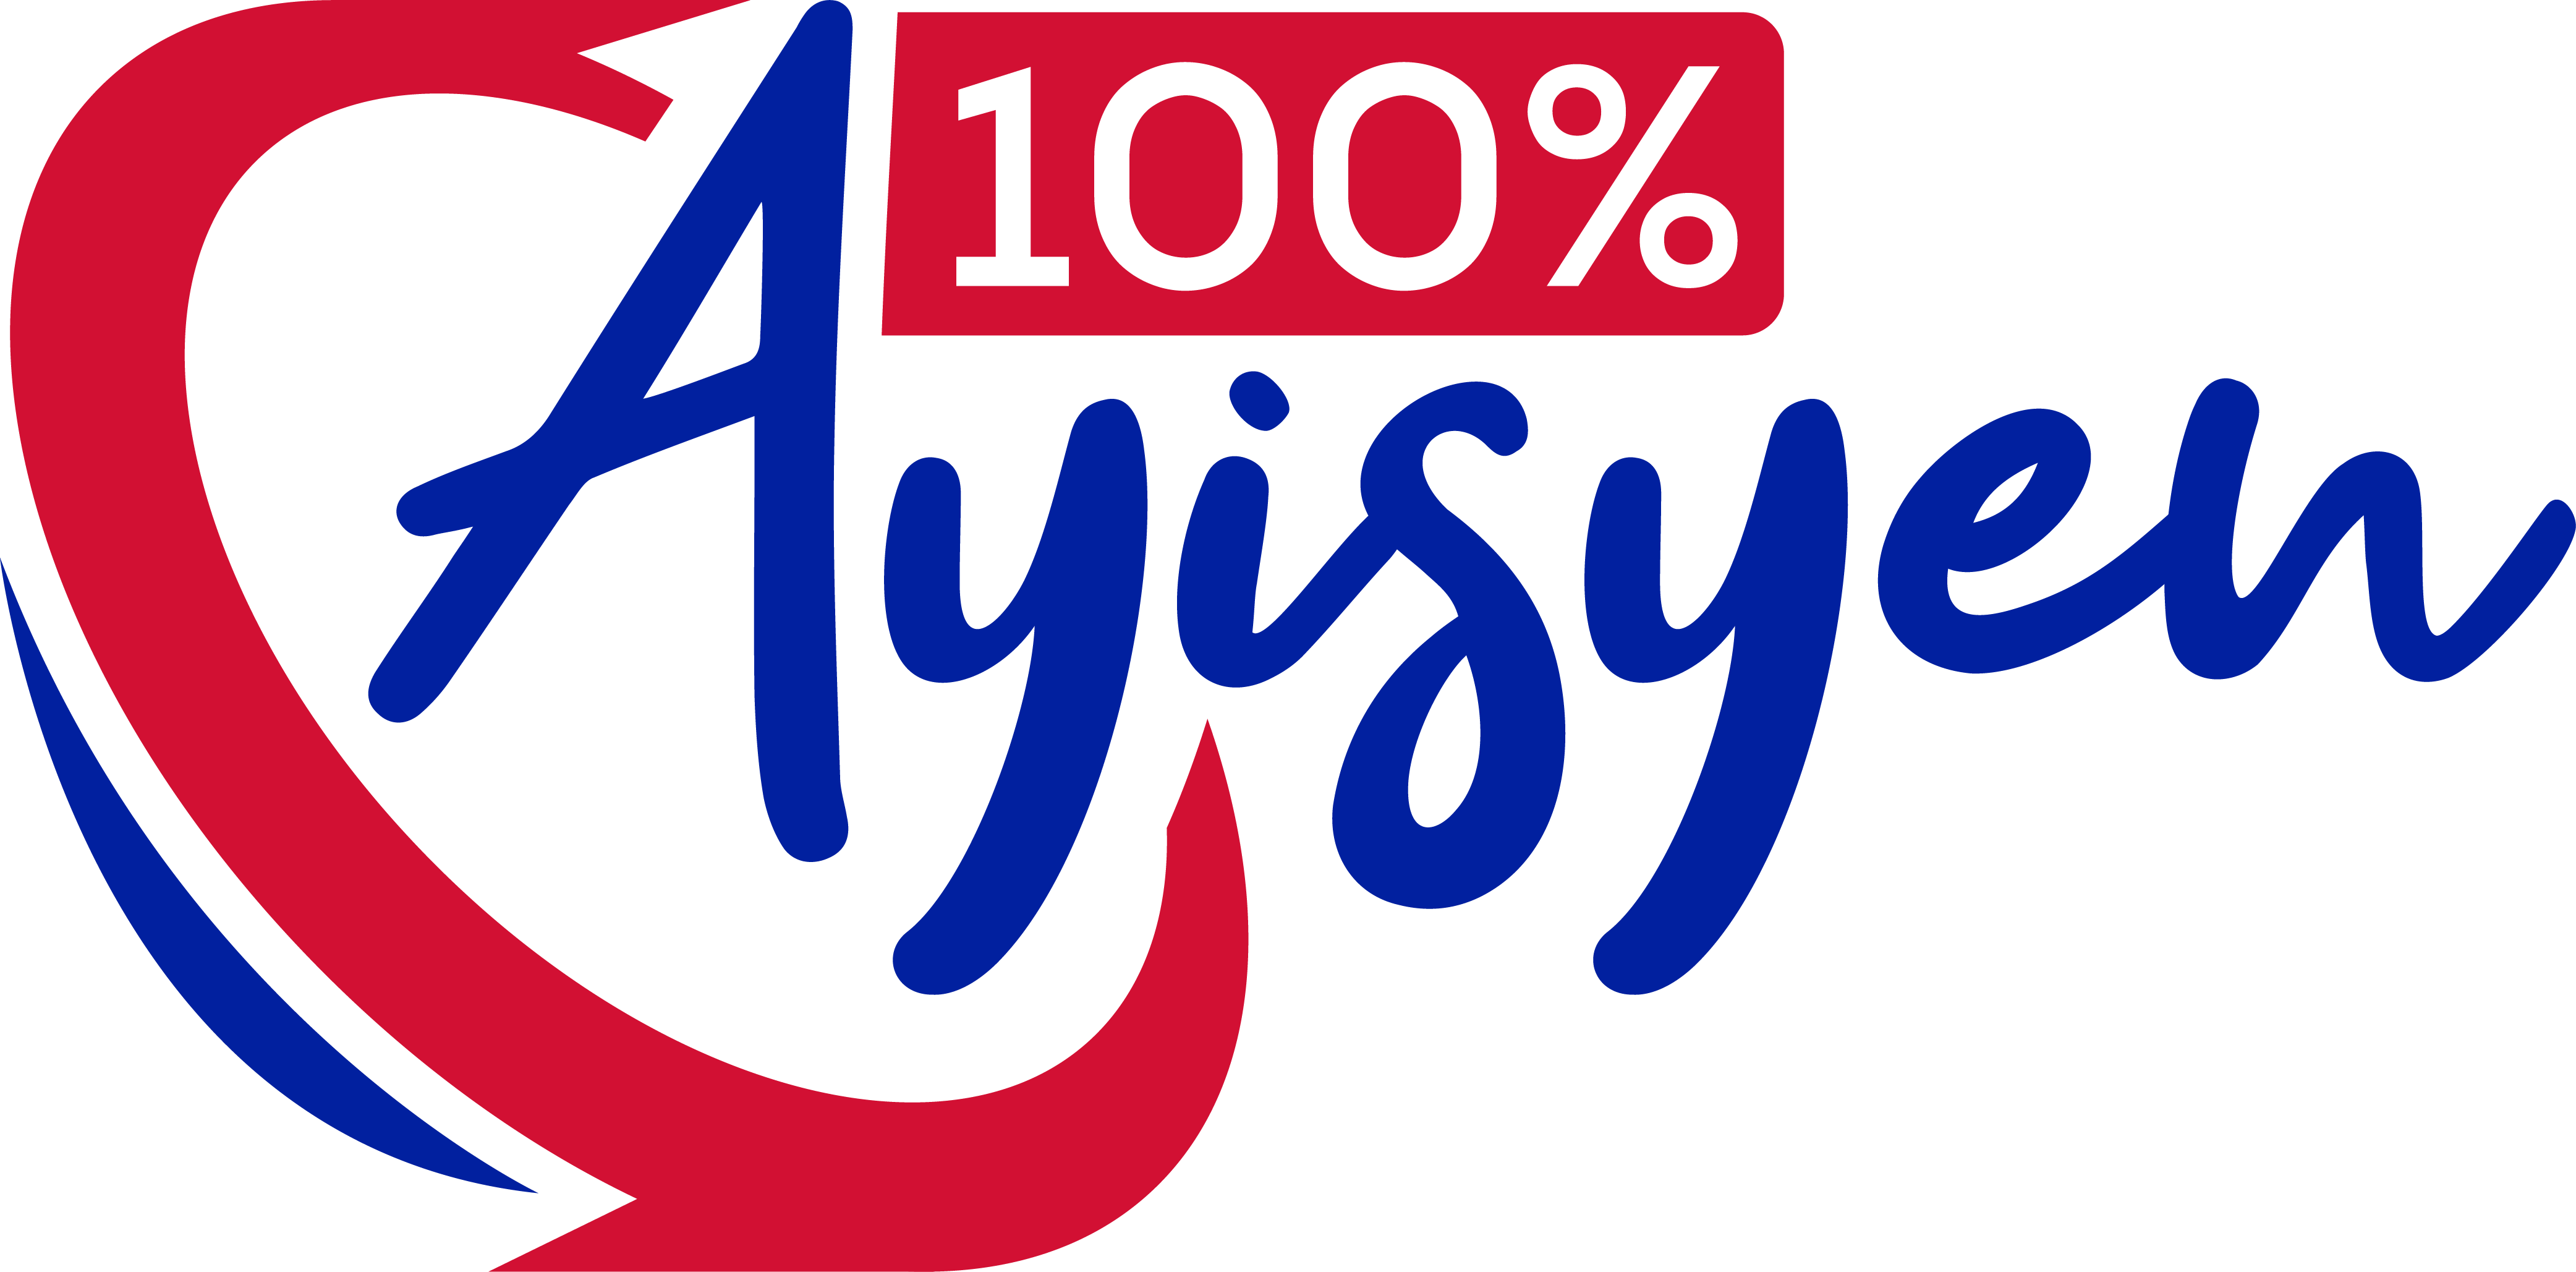 100% Ayisyen logo